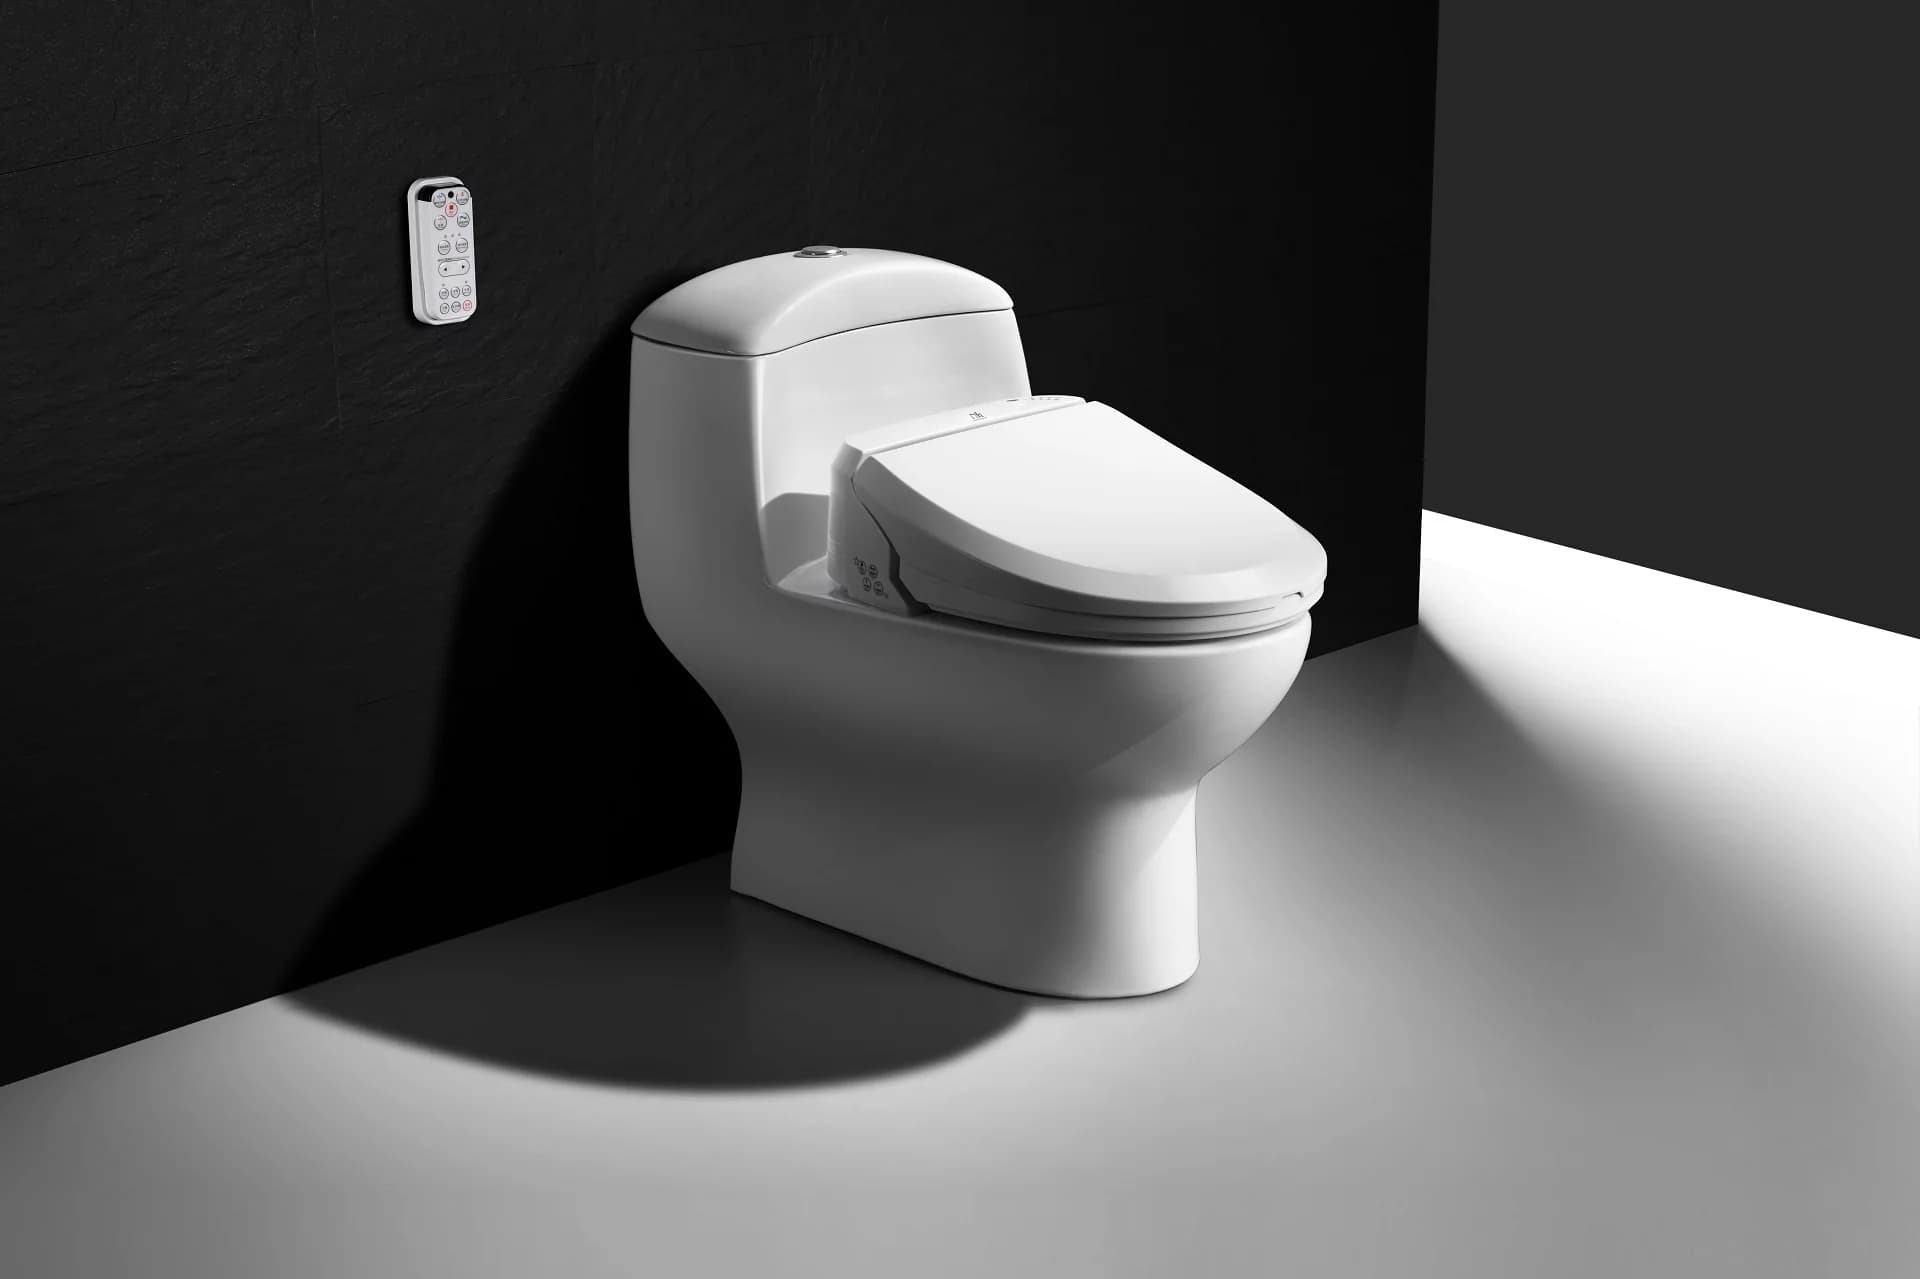 https://shp.aradbranding.com/خرید و قیمت توالت فرنگی سفید + فروش صادراتی